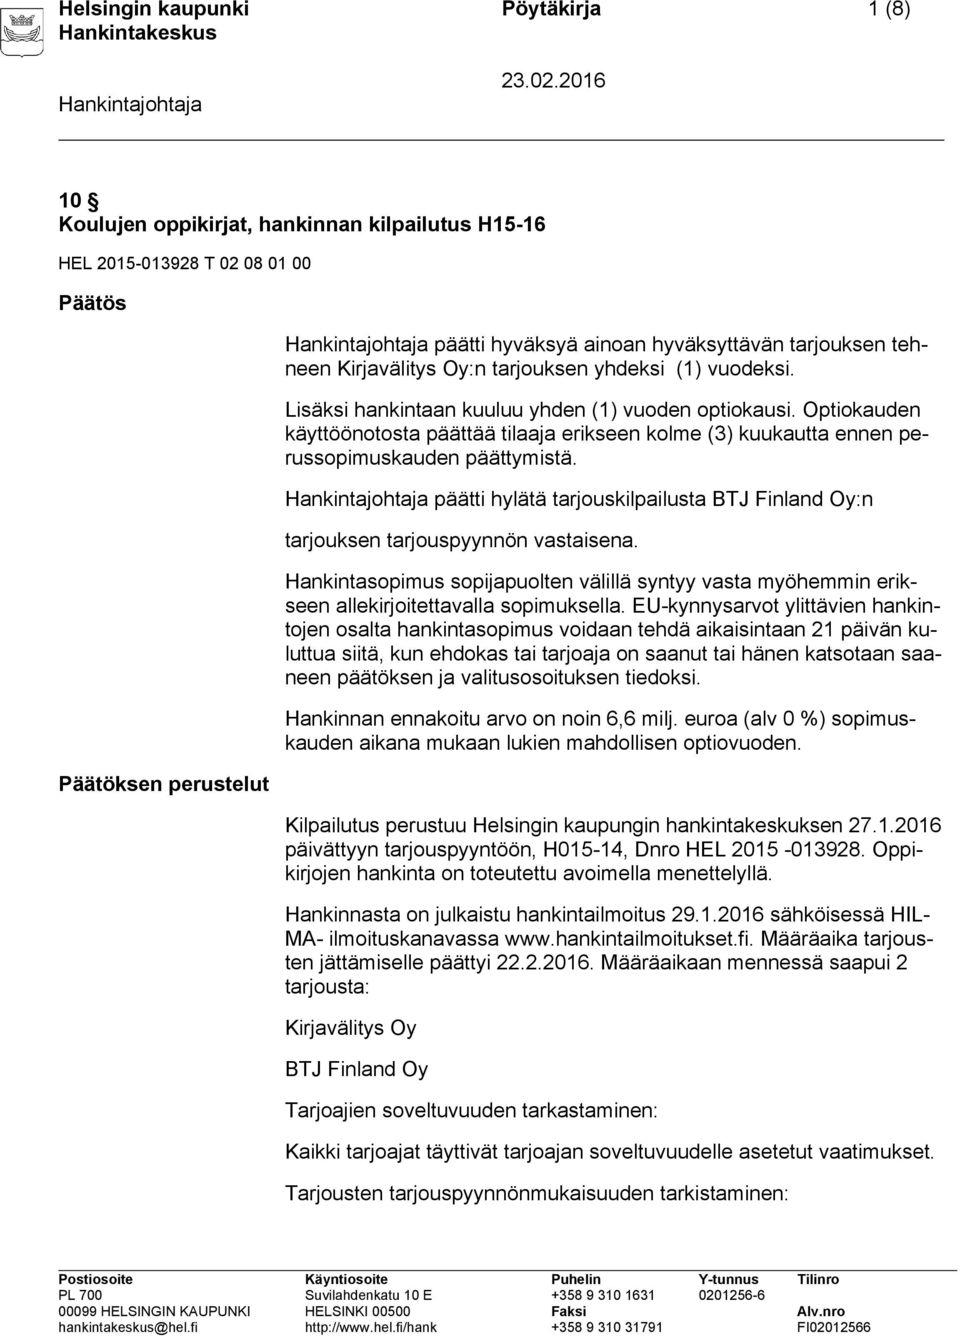 Optiokauden käyttöönotosta päättää tilaaja erikseen kolme (3) kuukautta ennen perussopimuskauden päättymistä. päätti hylätä tarjouskilpailusta BTJ Finland Oy:n tarjouksen tarjouspyynnön vastaisena.